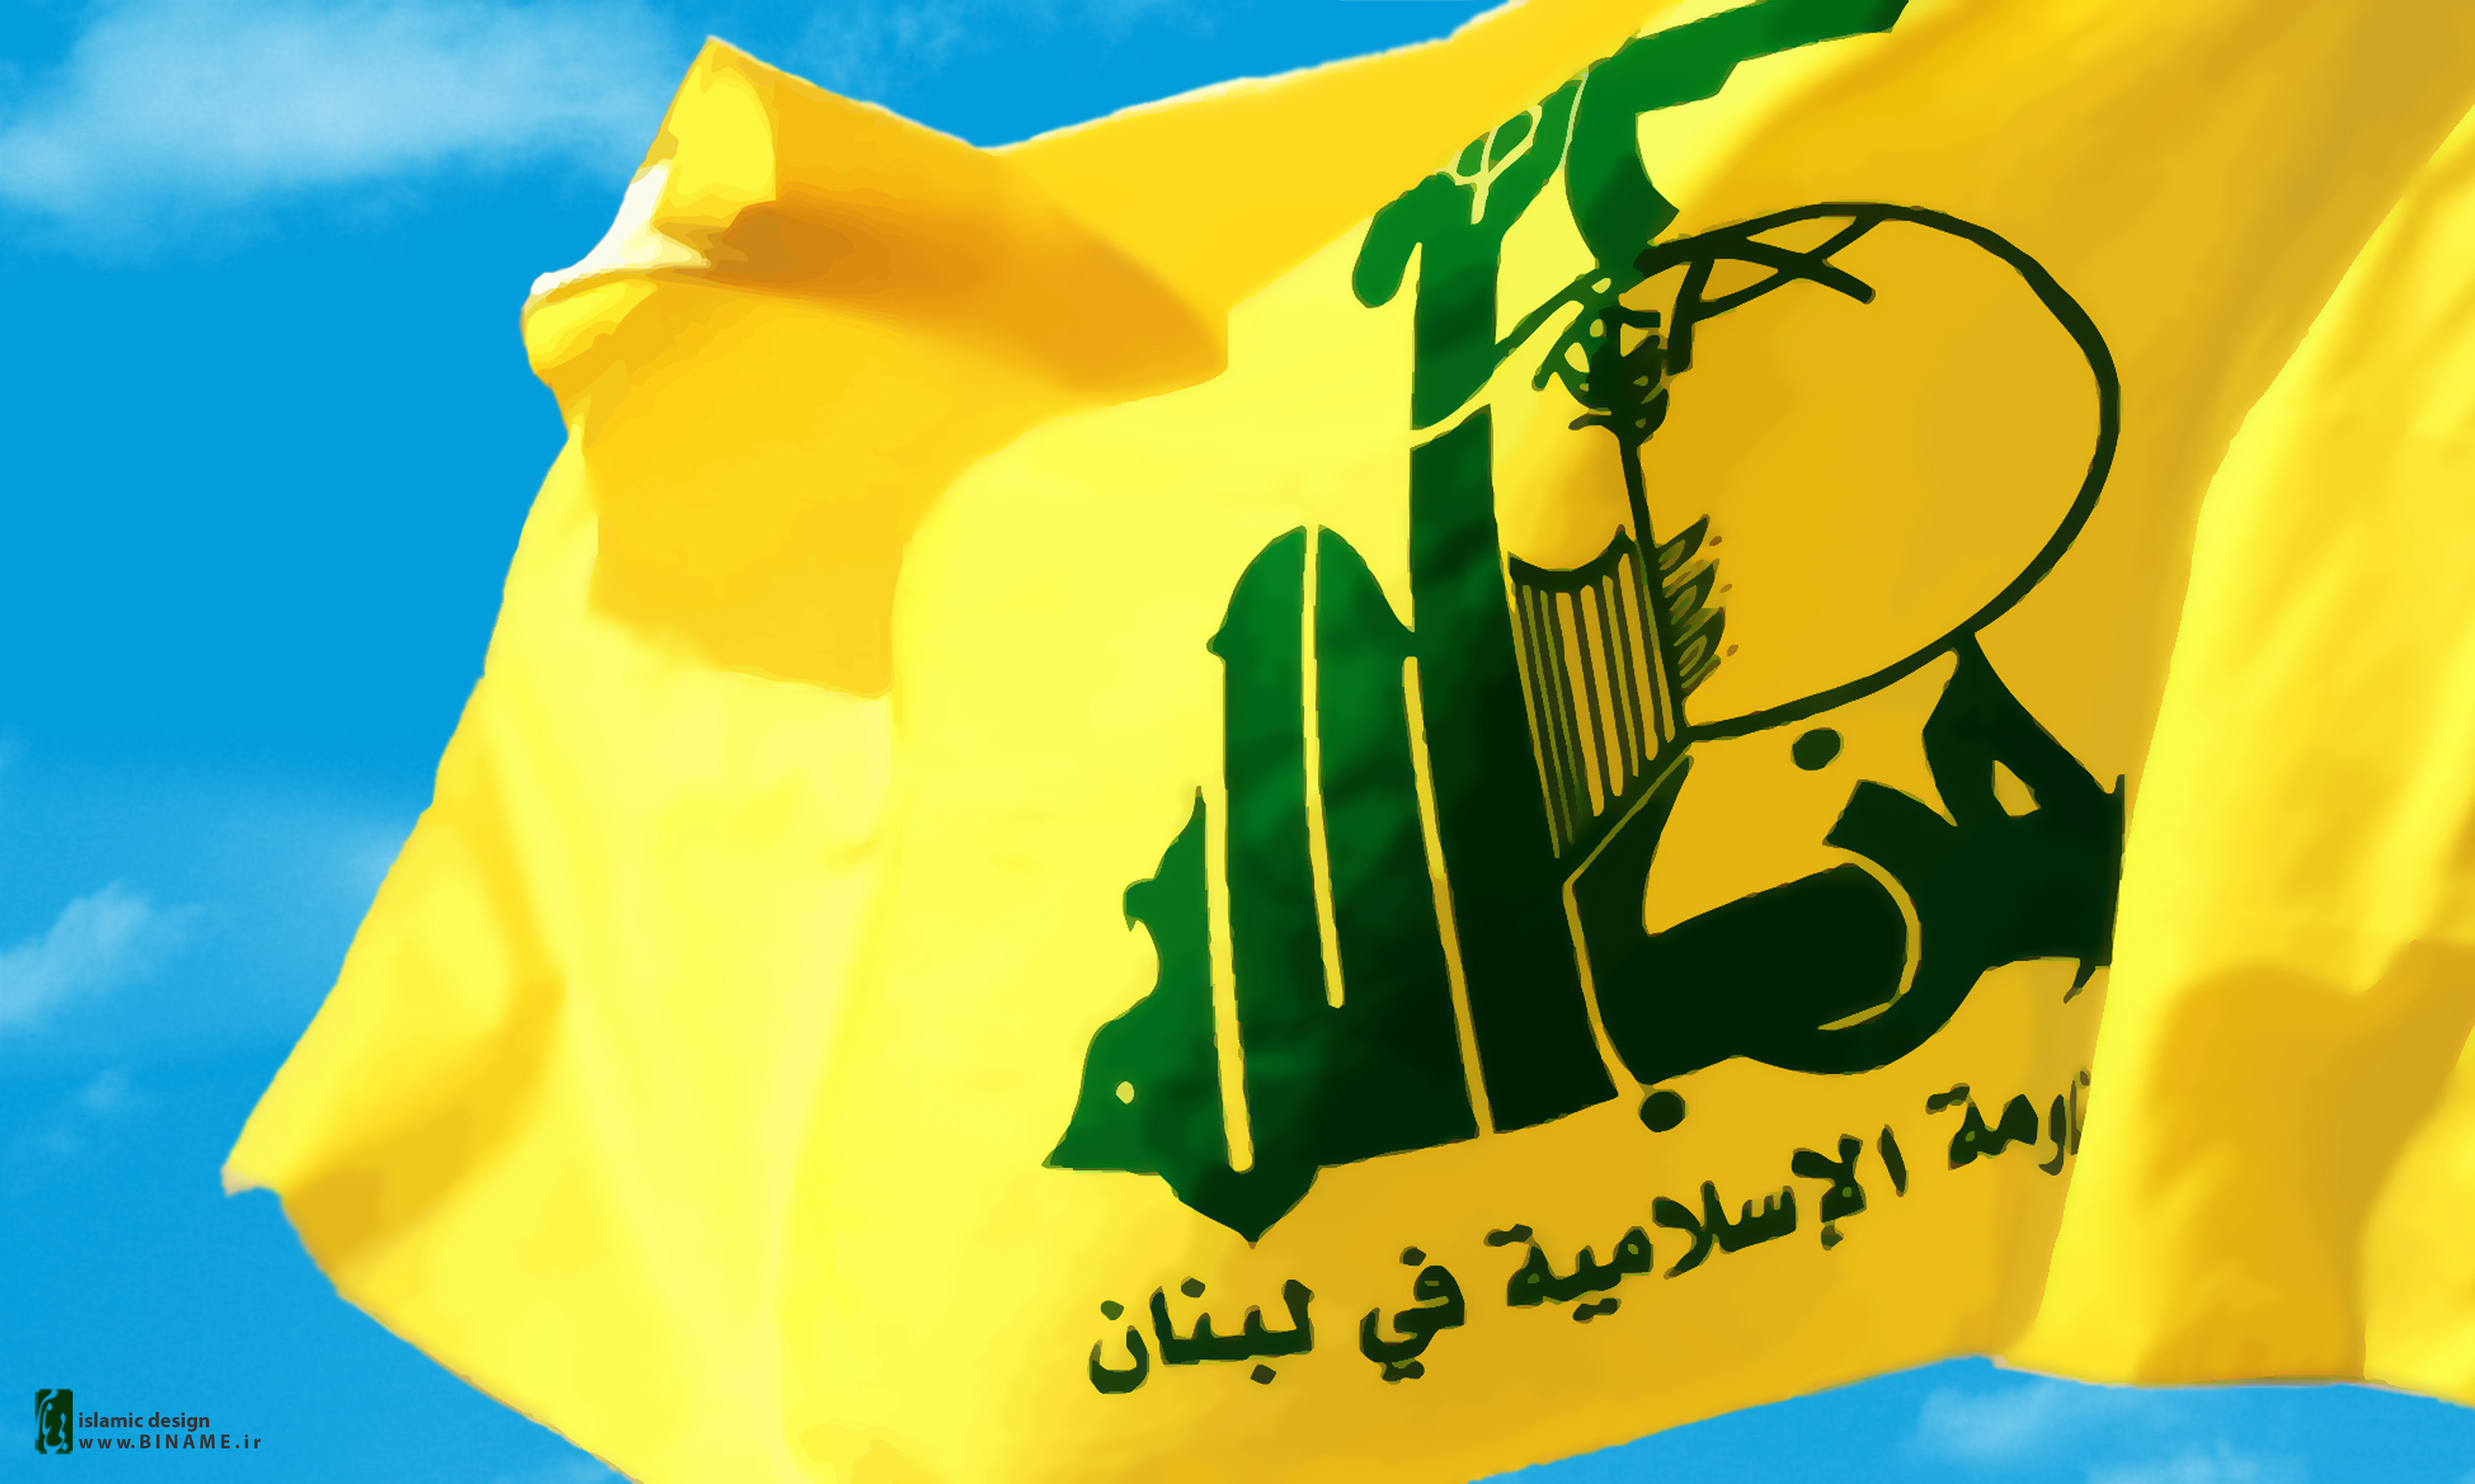 صحيفة فورين بوليس الامريكية تؤكد أن حزب الله لاعب اساسي في محاربة التنظيمات الارهابية بالشرق الأوسط